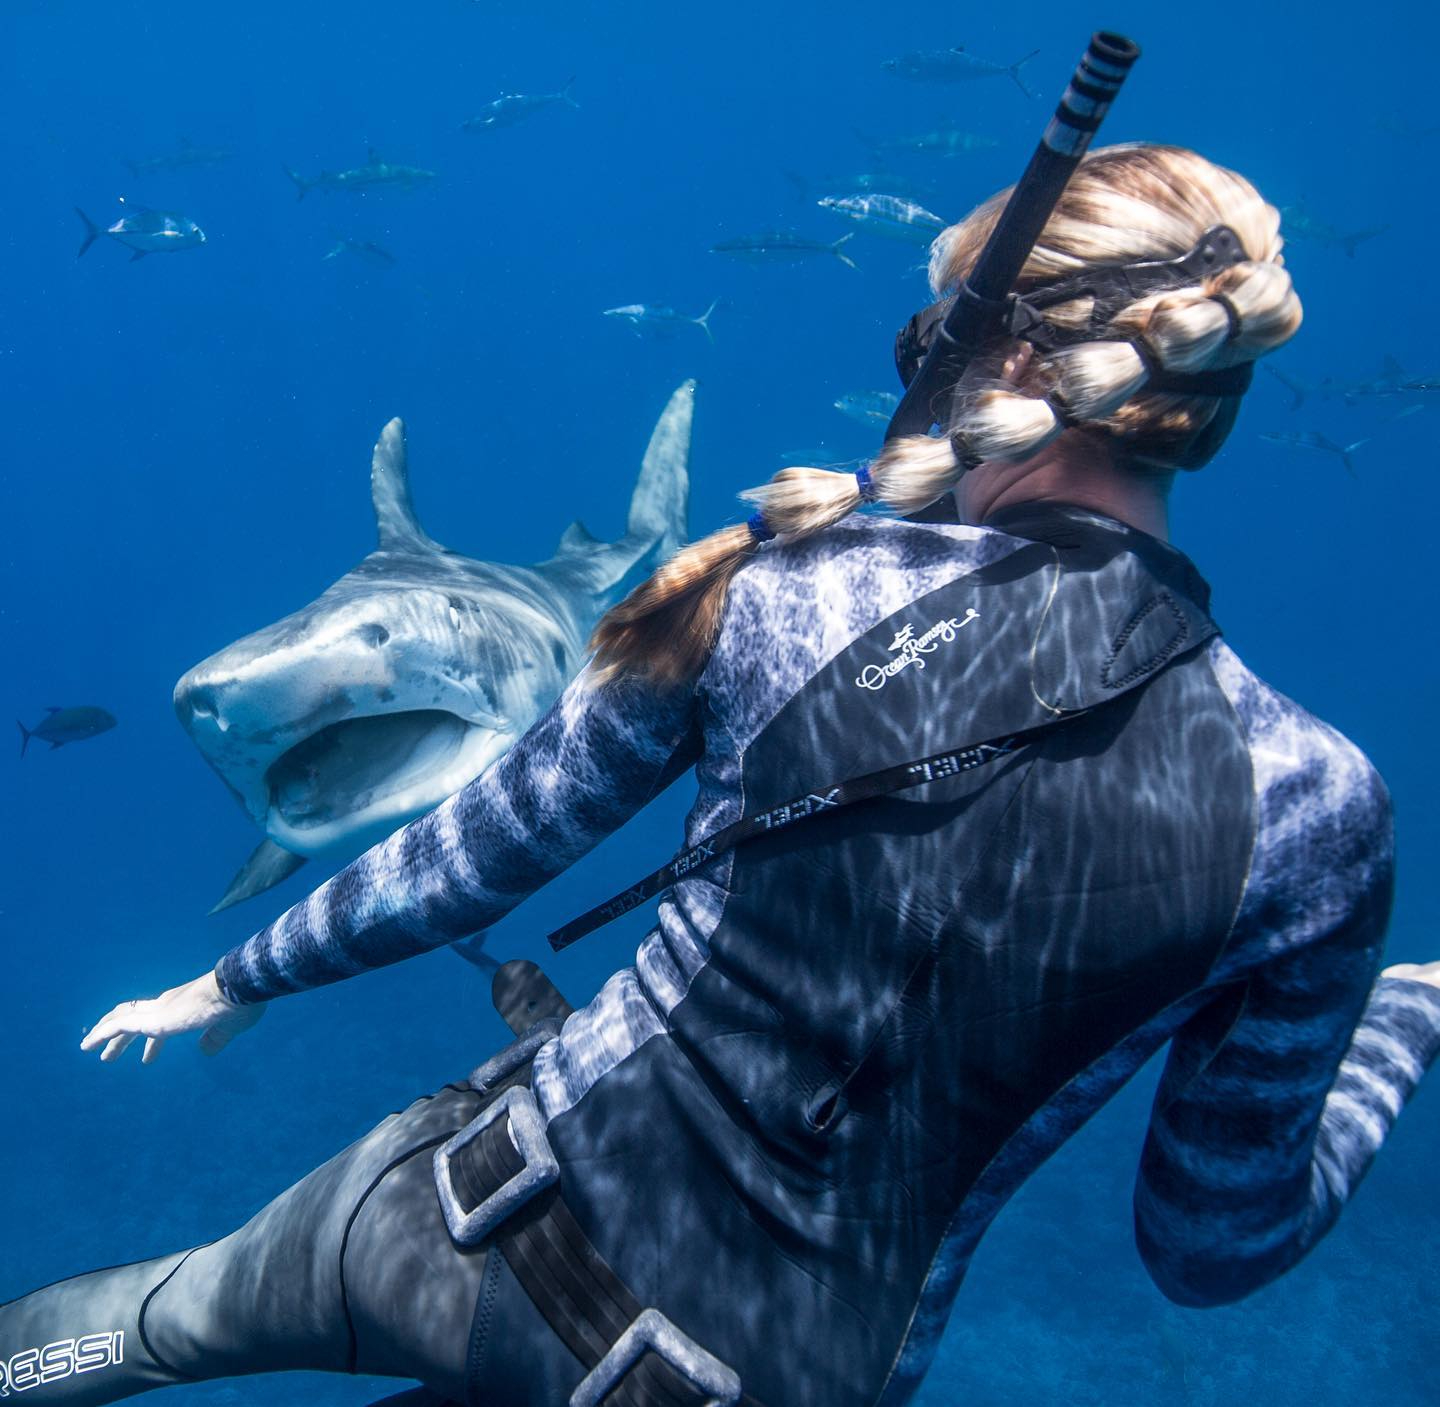 La experta en tiburones Kayleigh Nicole Grant compartió algunos consejos para los nadadores que se encuentran con depredadores en el agua.